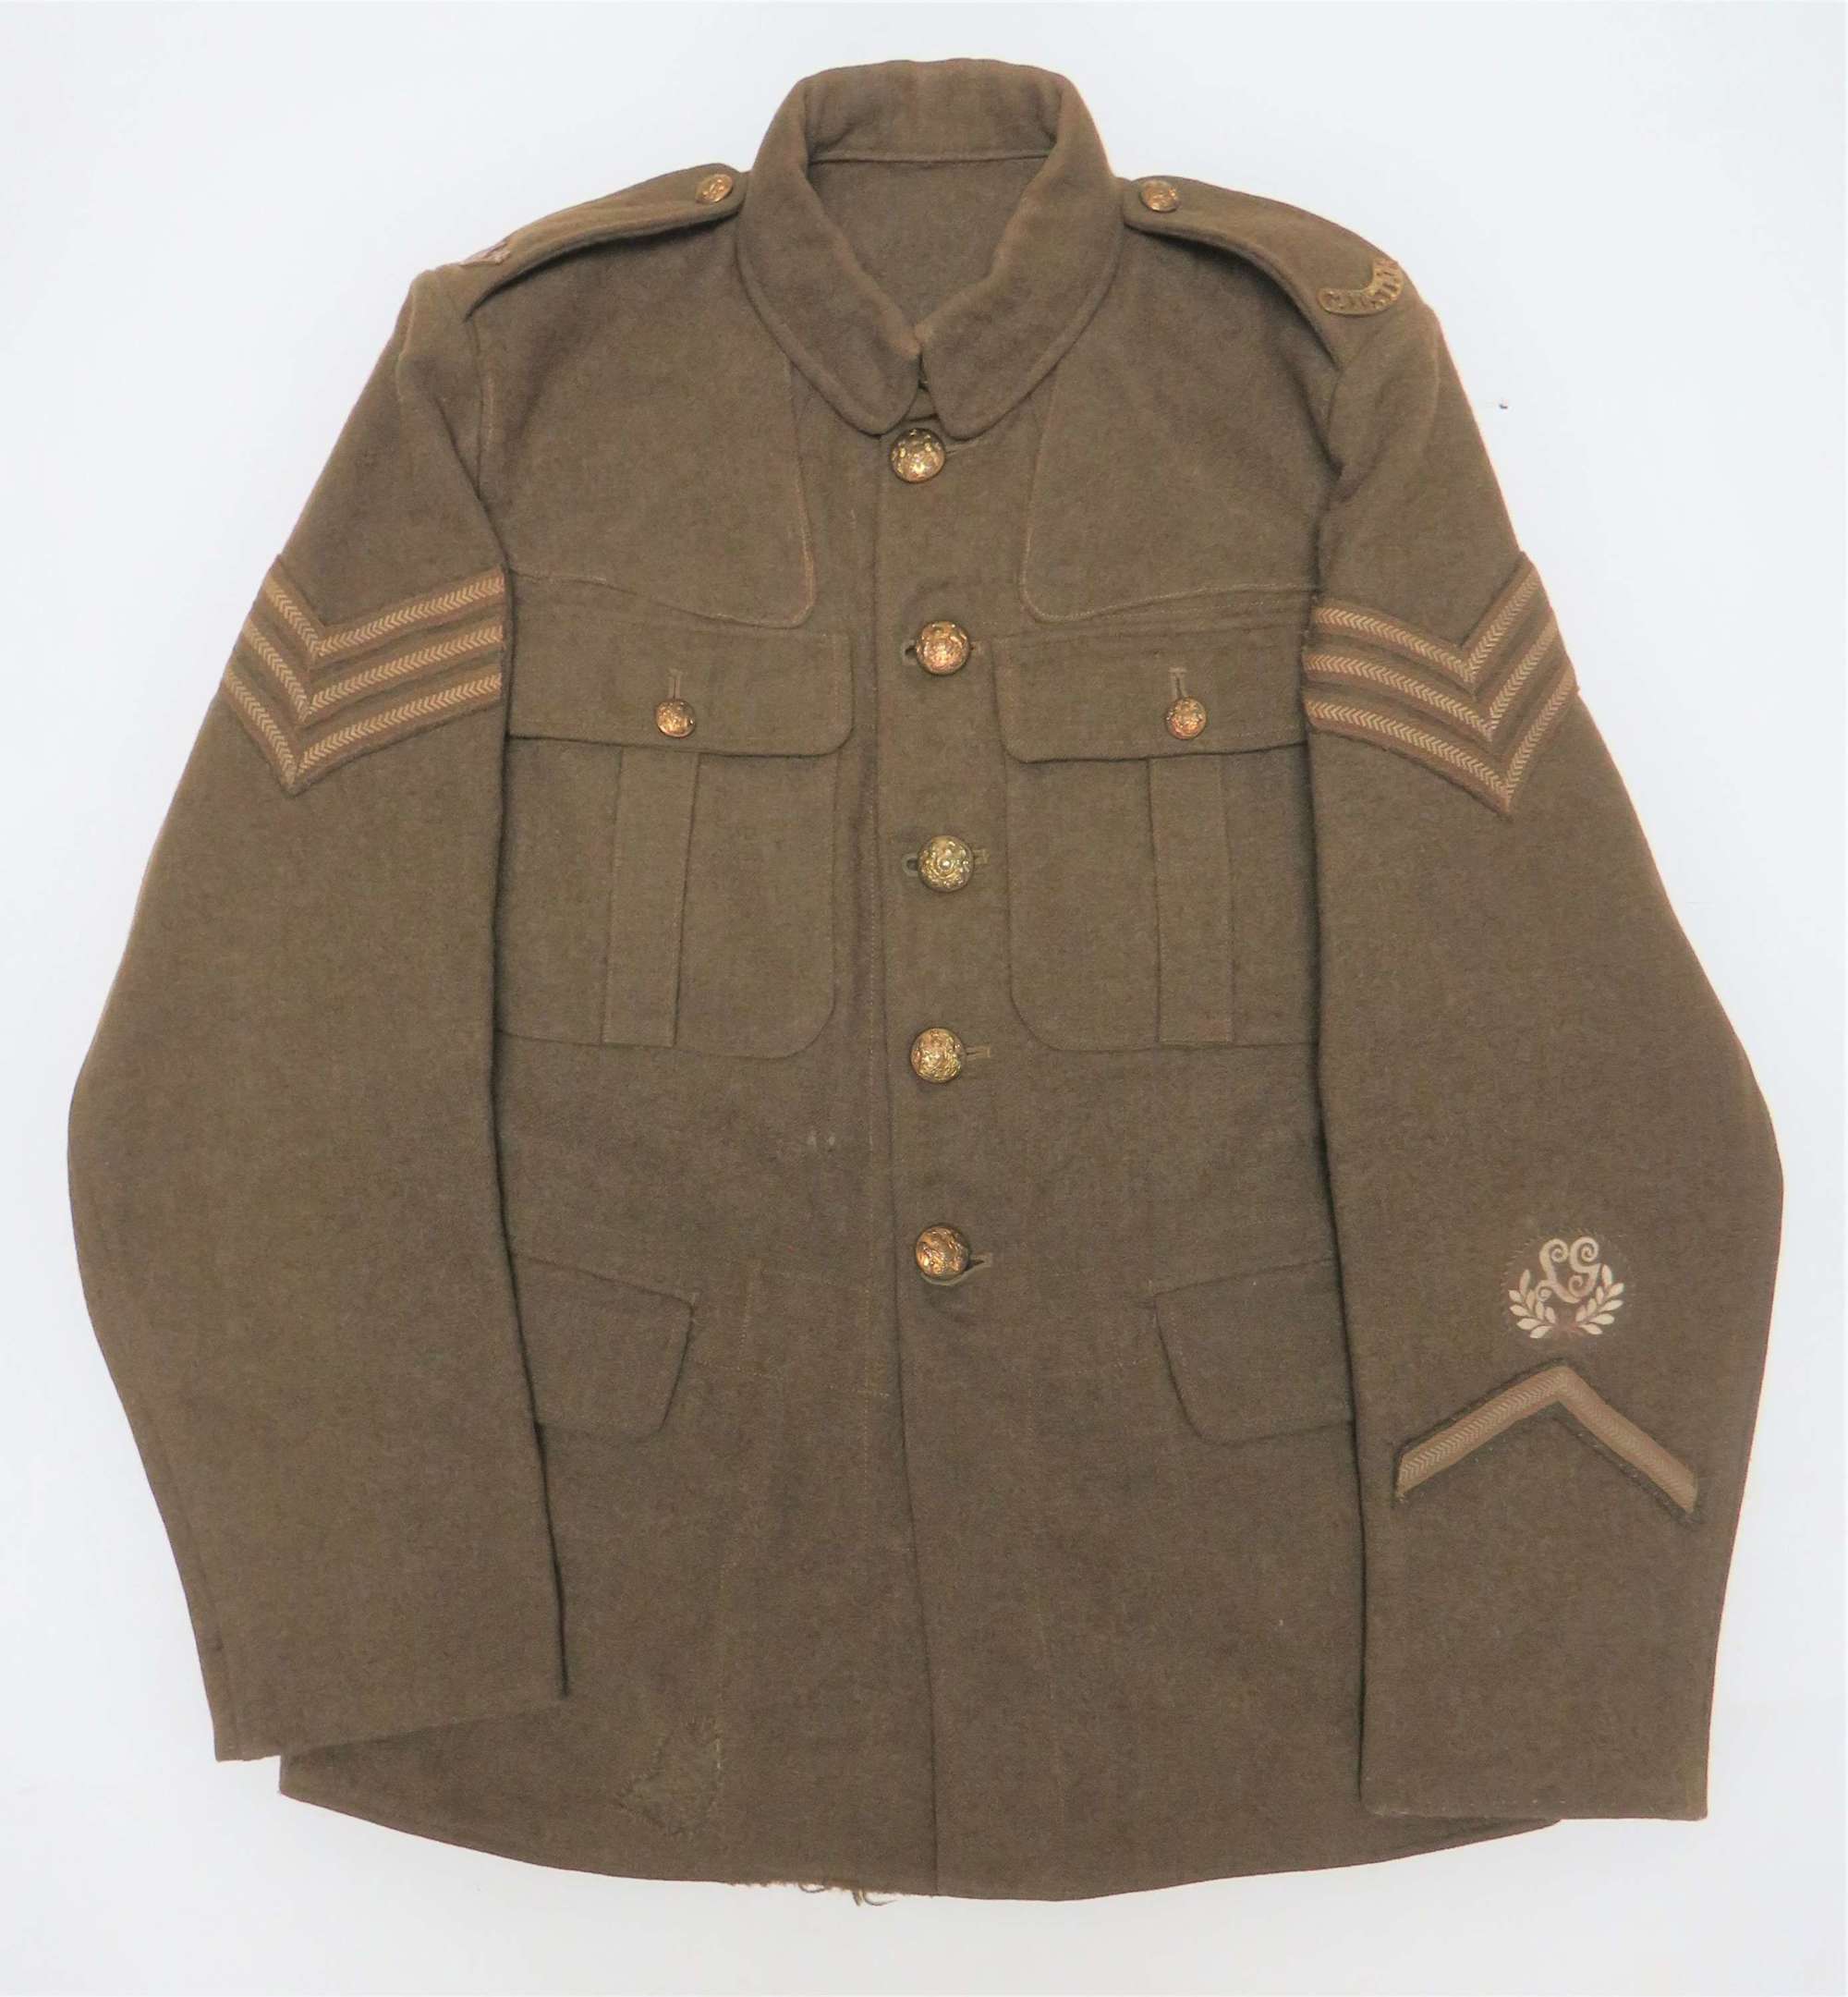 Rare Glostershire Reg 1918 Pattern Double pleat Service Dress Tunic